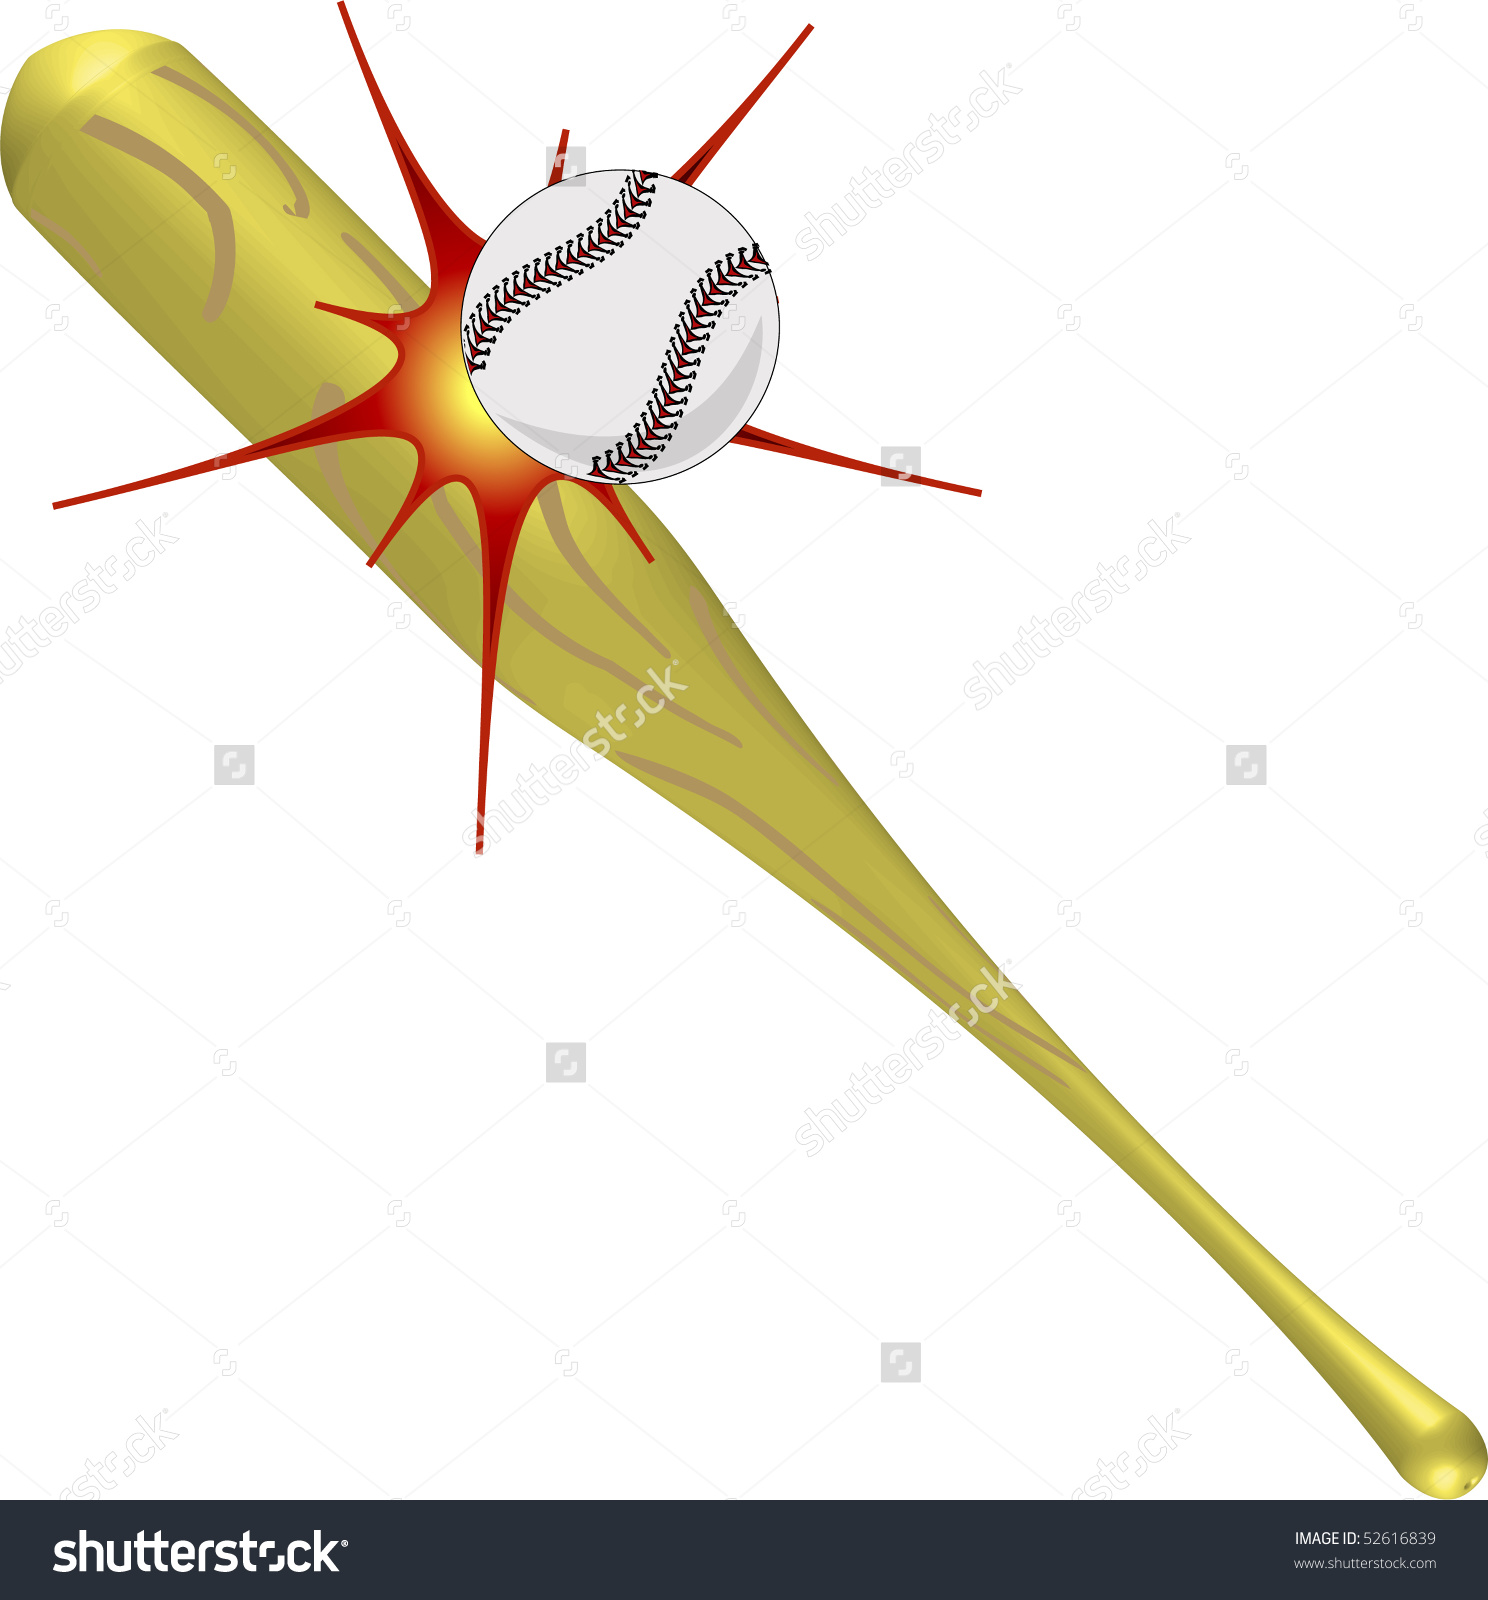 Baseball equipment, ball hitt